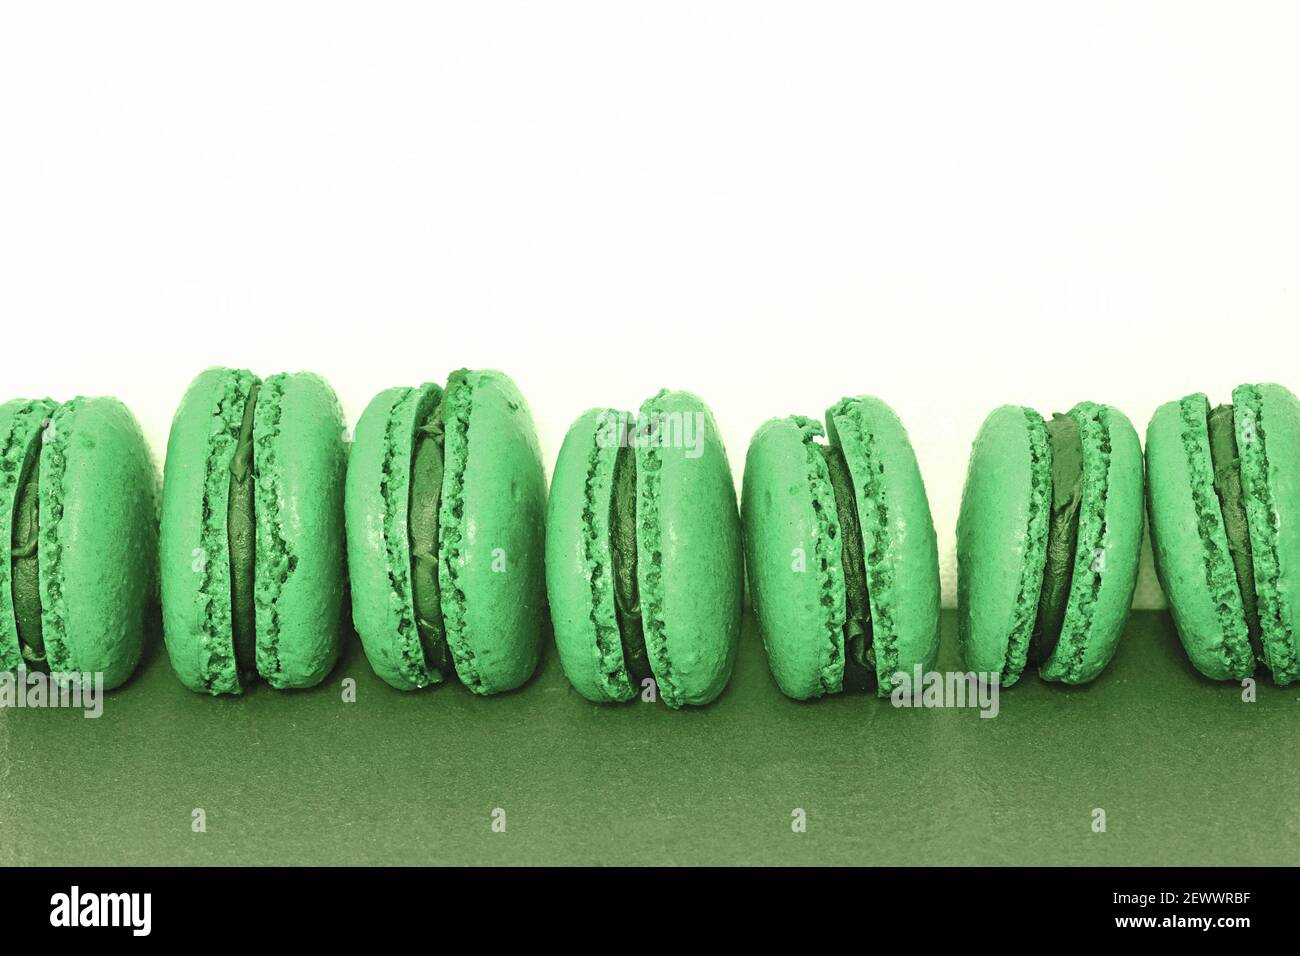 Bunte hausgemachte Makronen-Kekse mit Ganache-Creme gefüllt Stockfoto